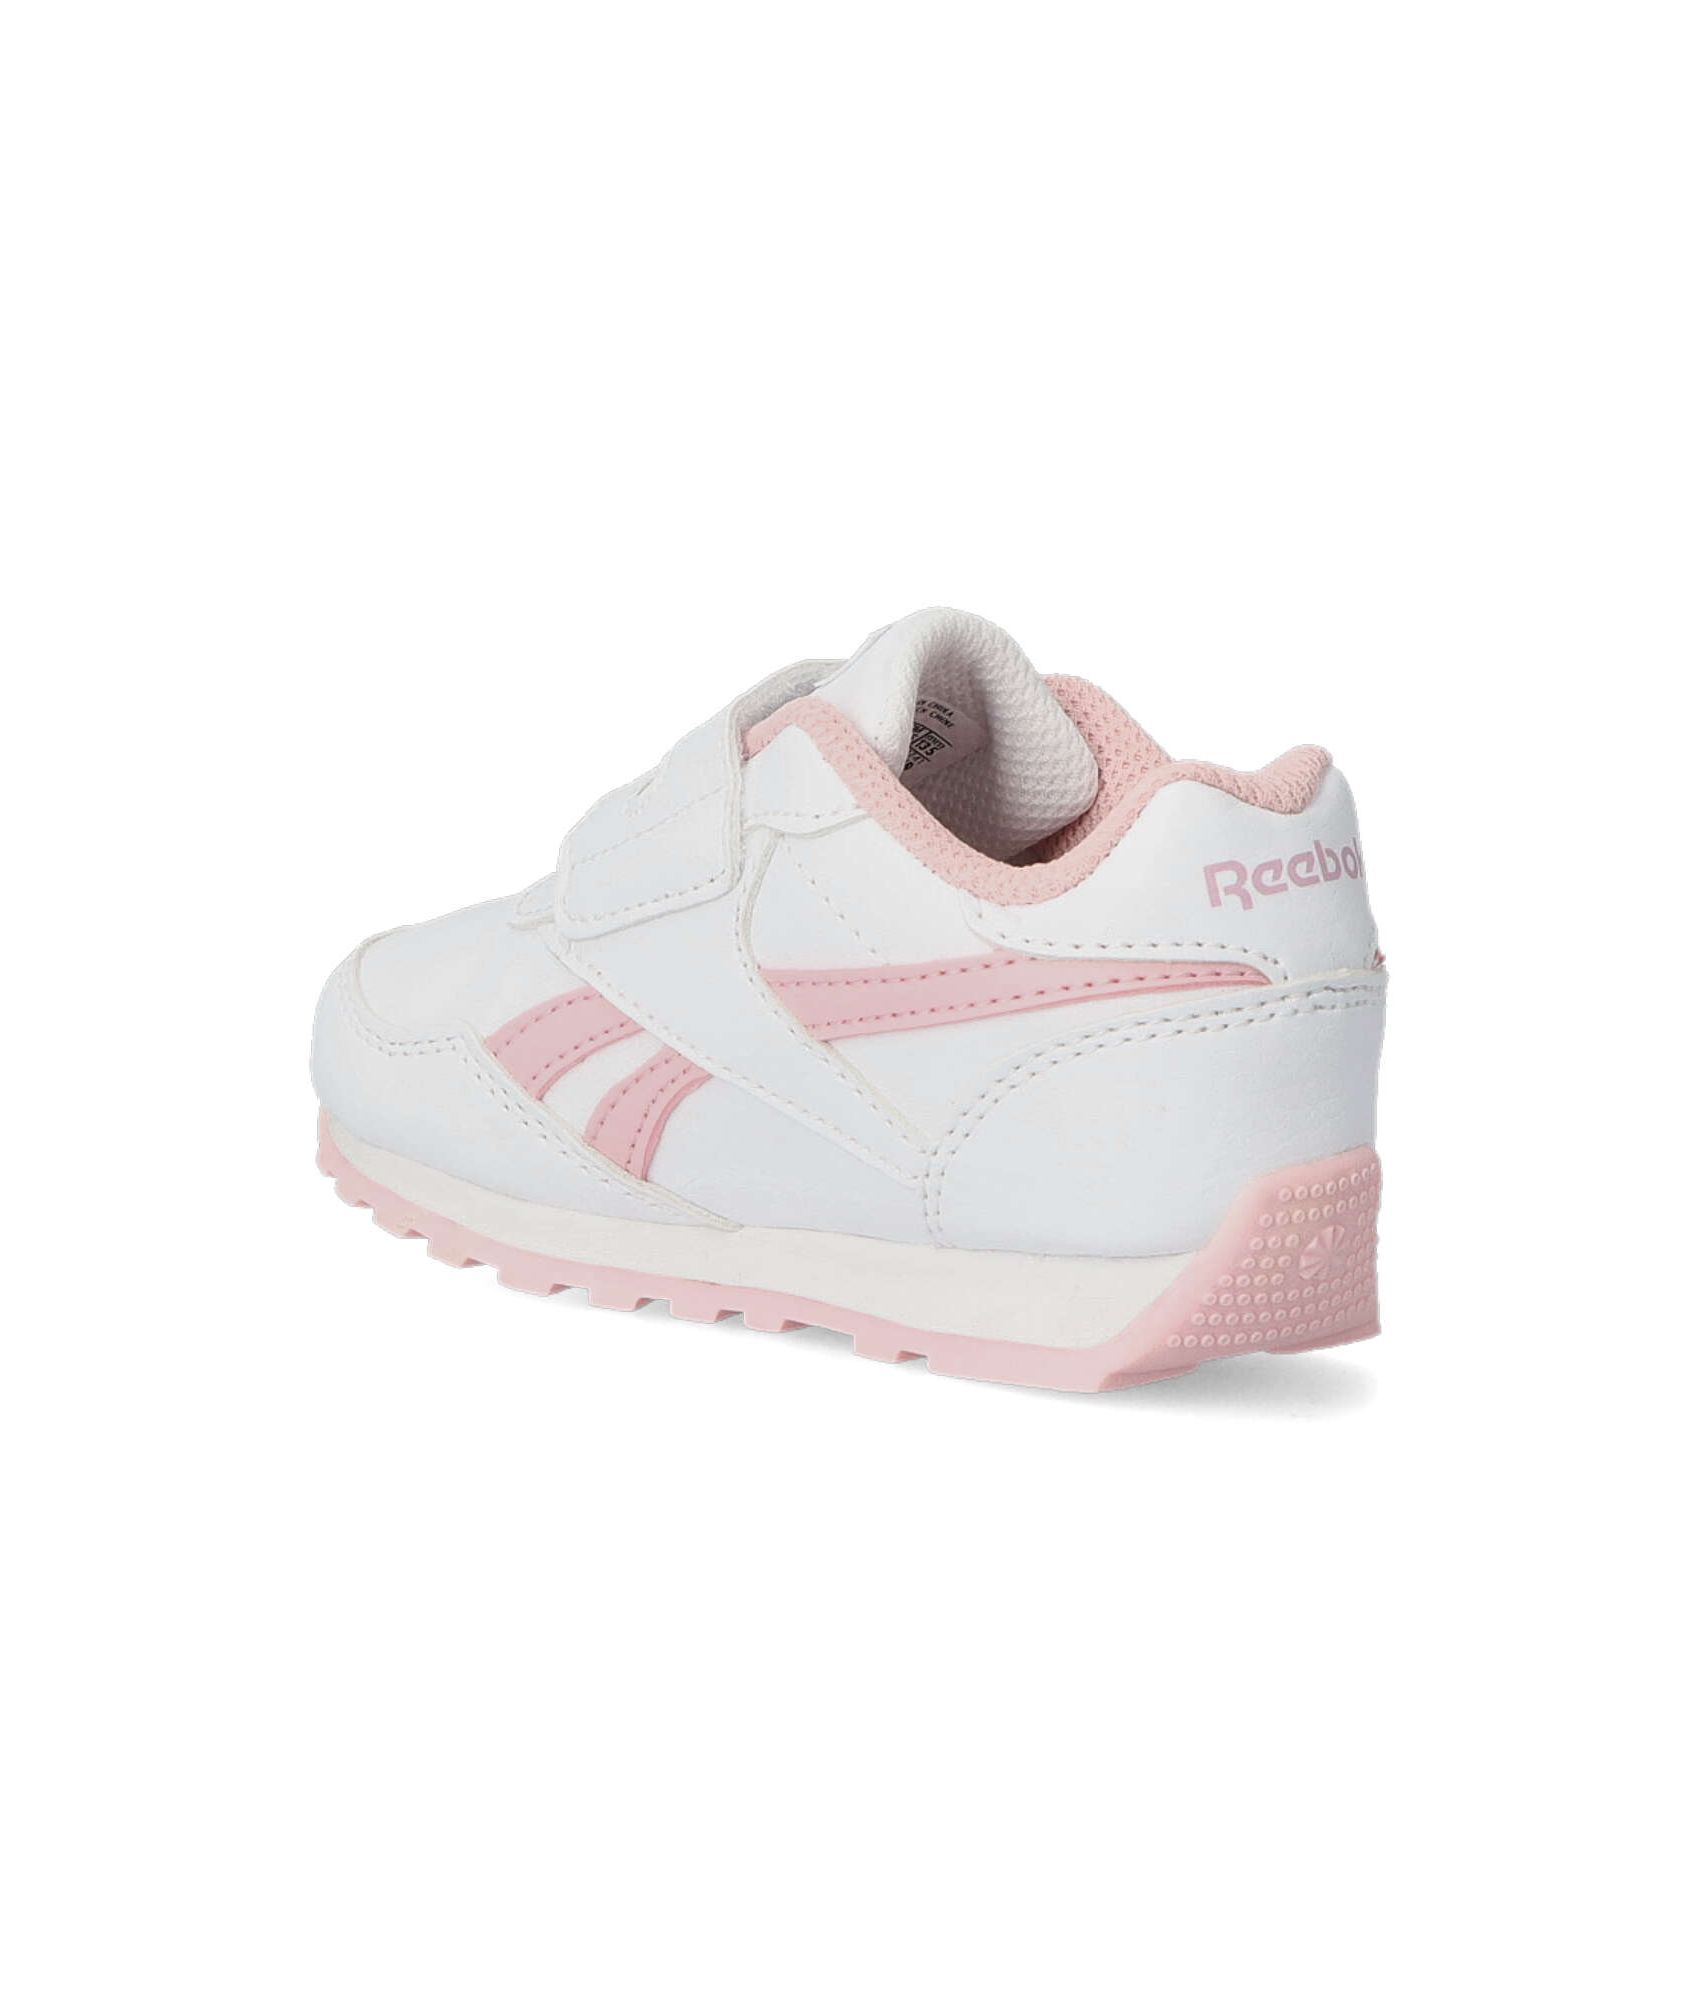 Zapatillas deportivas niña Reebok blancas y rosas ⋆ EsCuqui